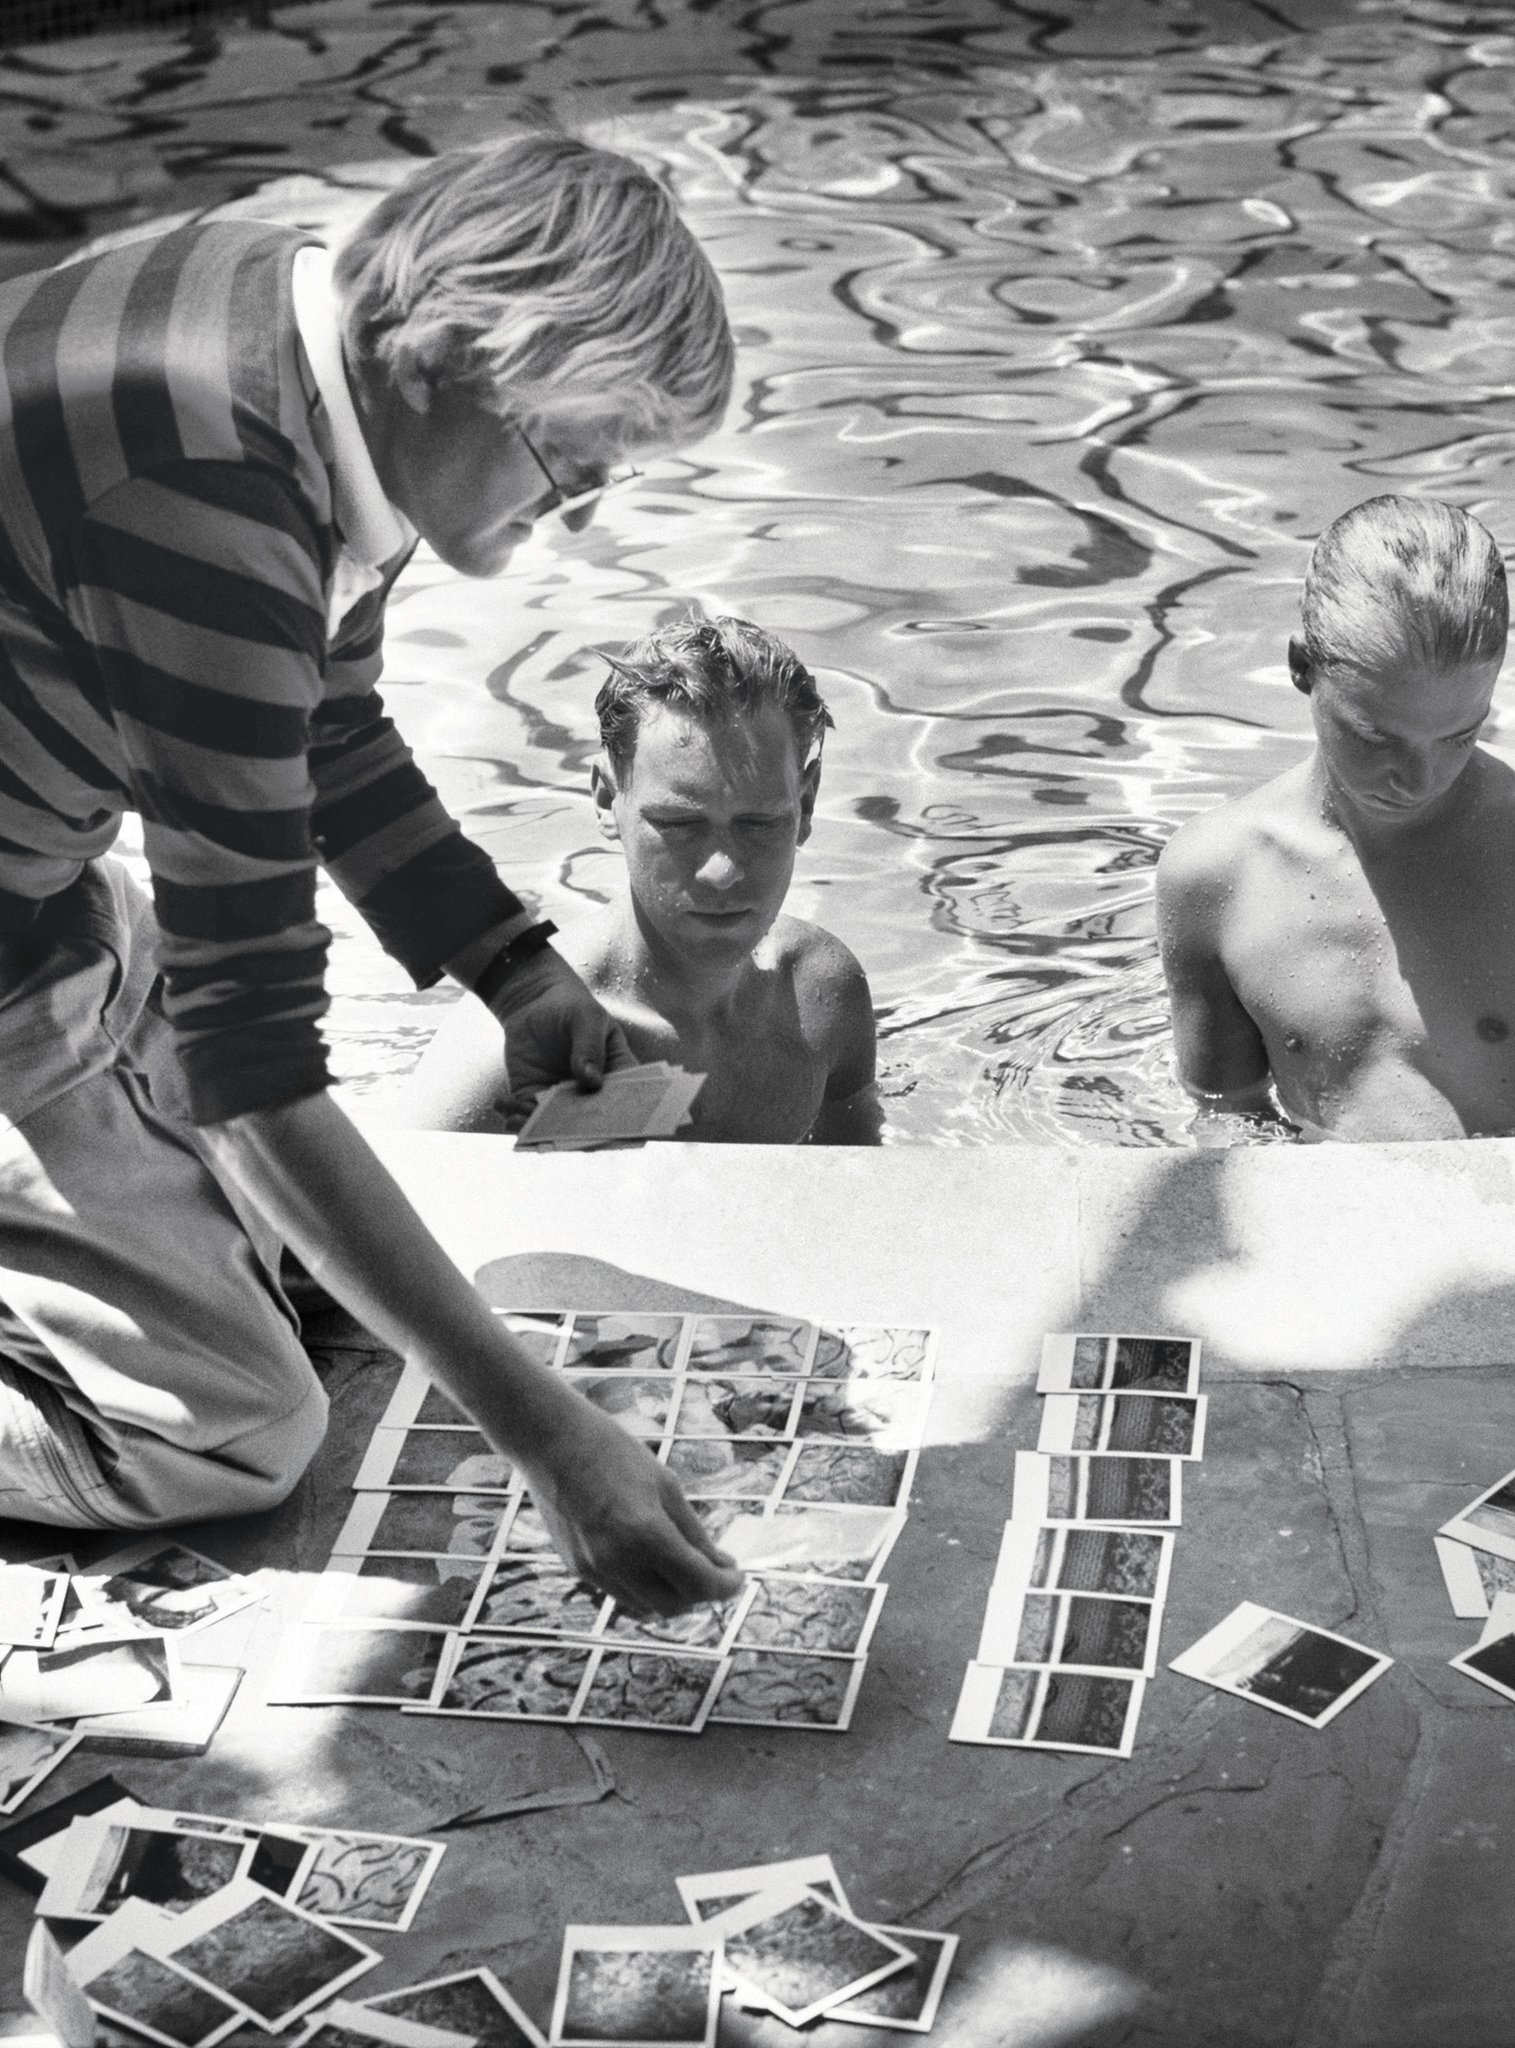 Happy birthday David Hockney, 80 today 